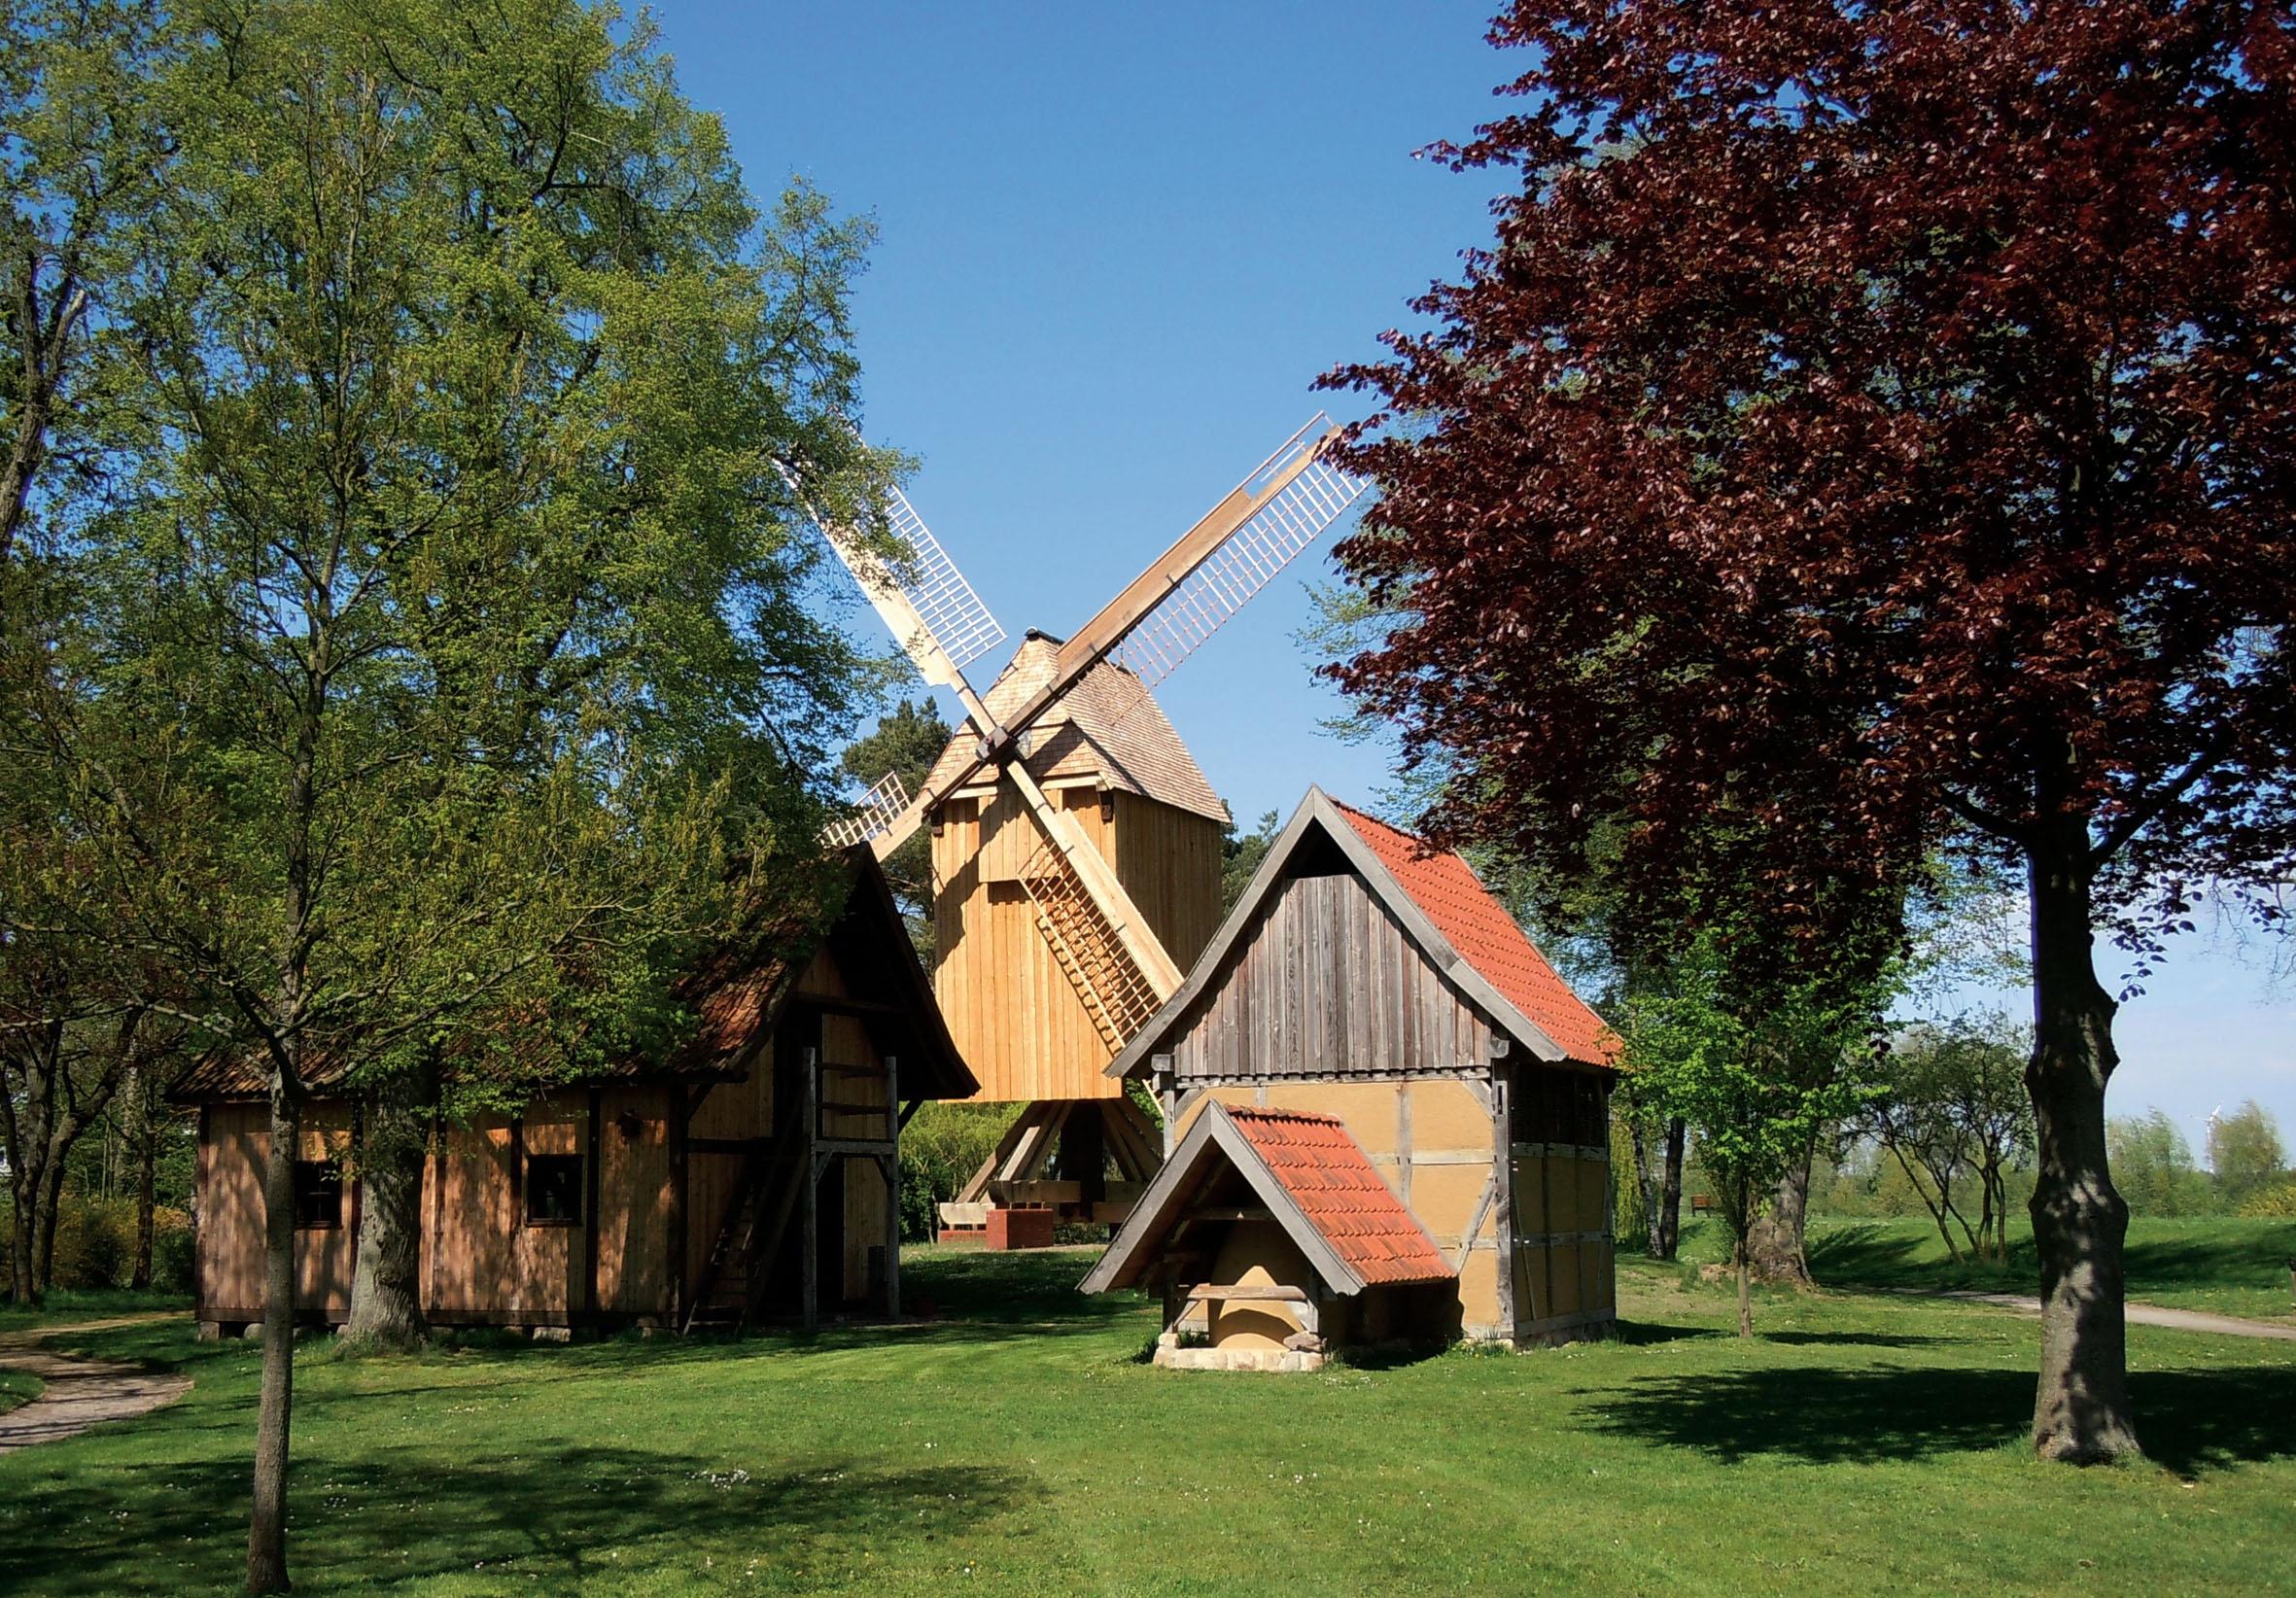 Rethem (Aller): Post windmill